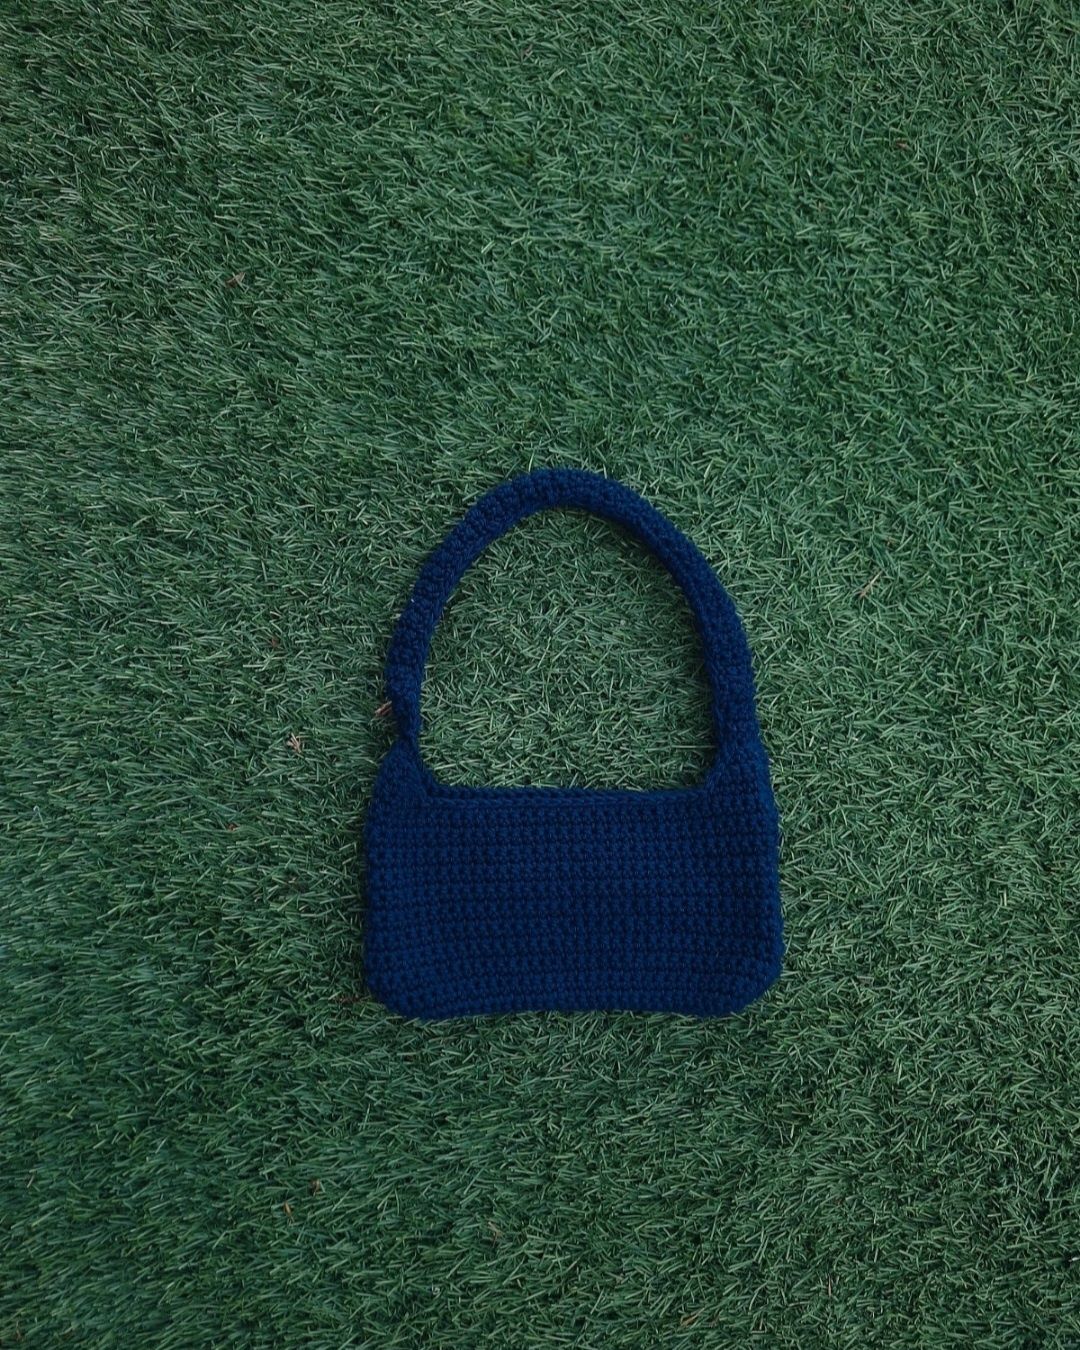 Shoulder bag crochet